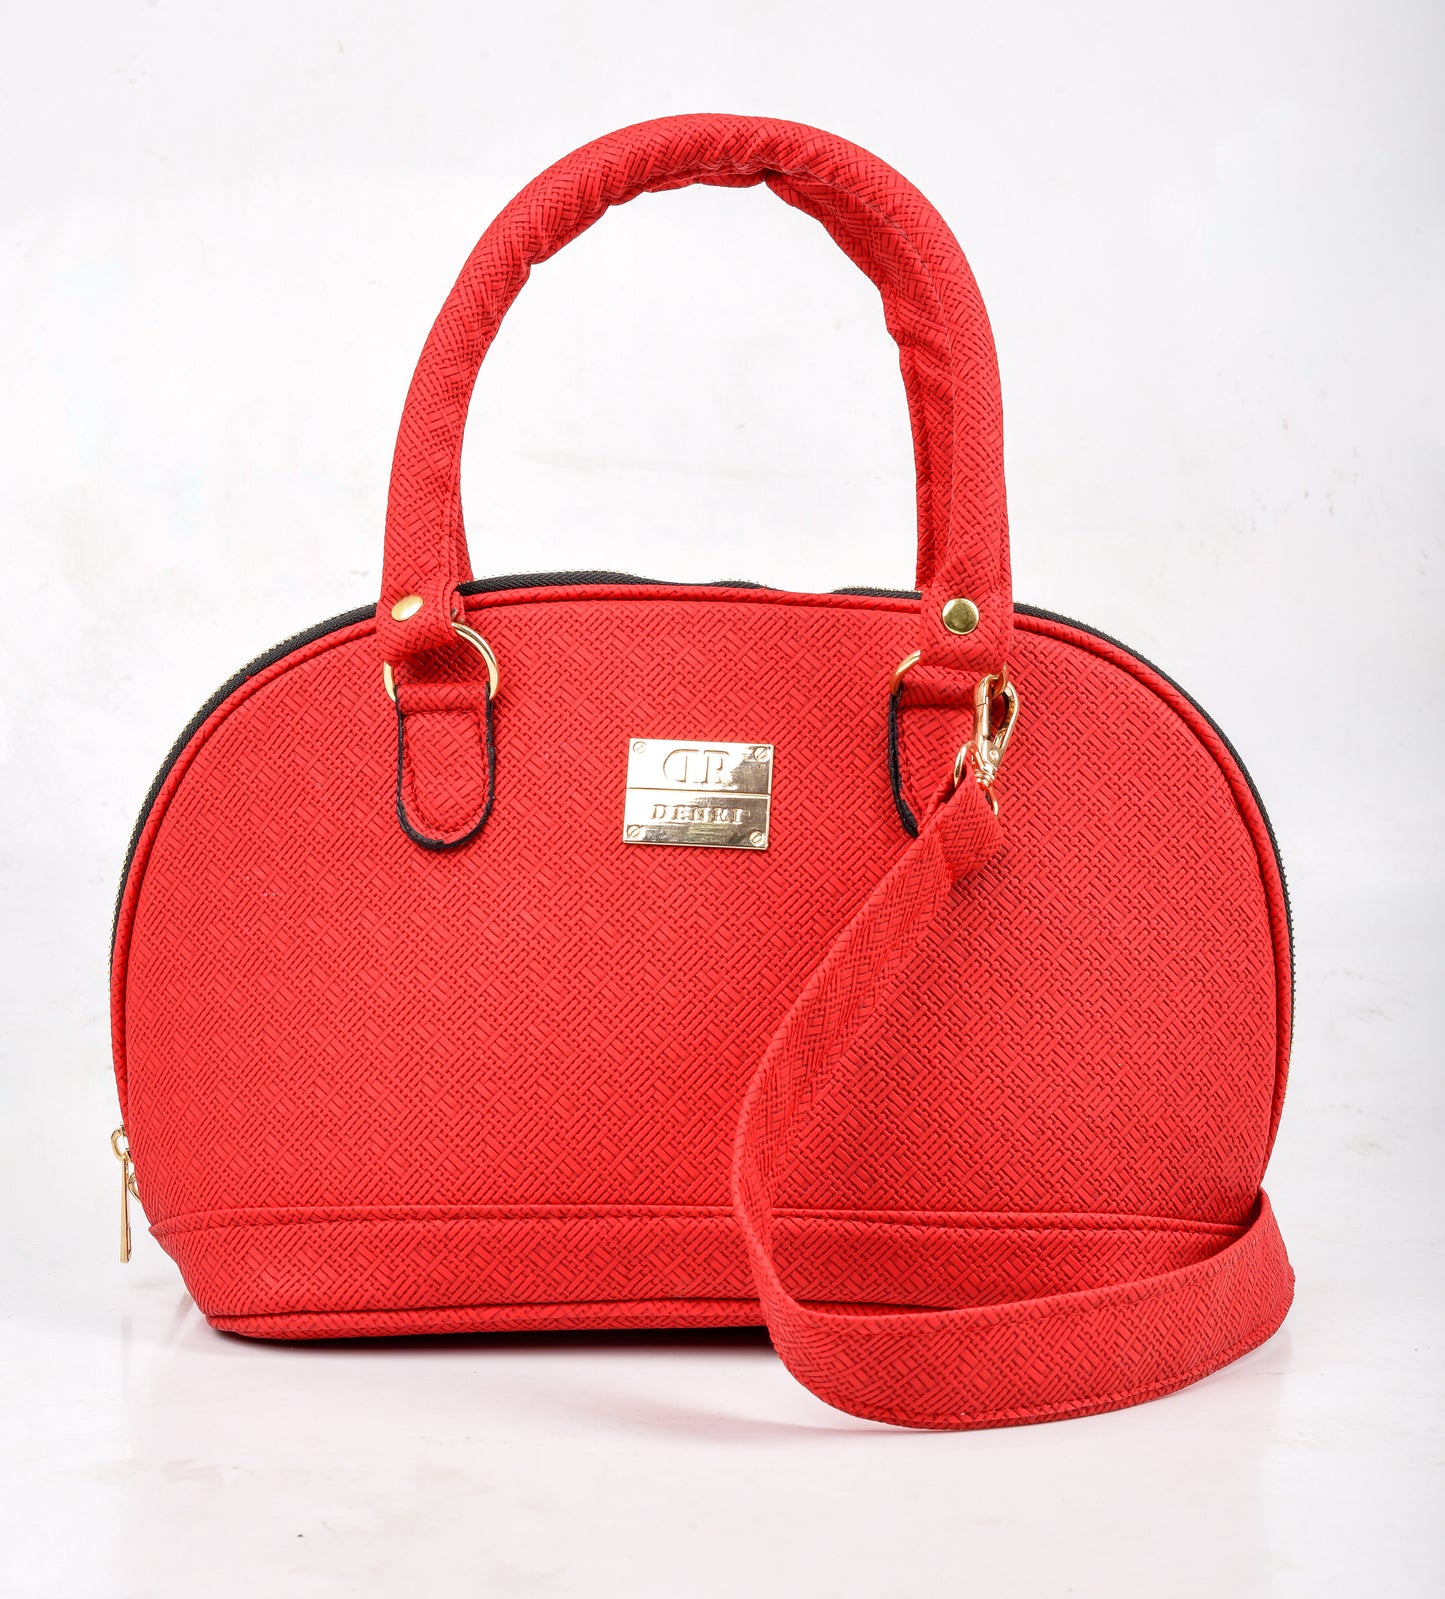 Oval Handbag Pattern Red